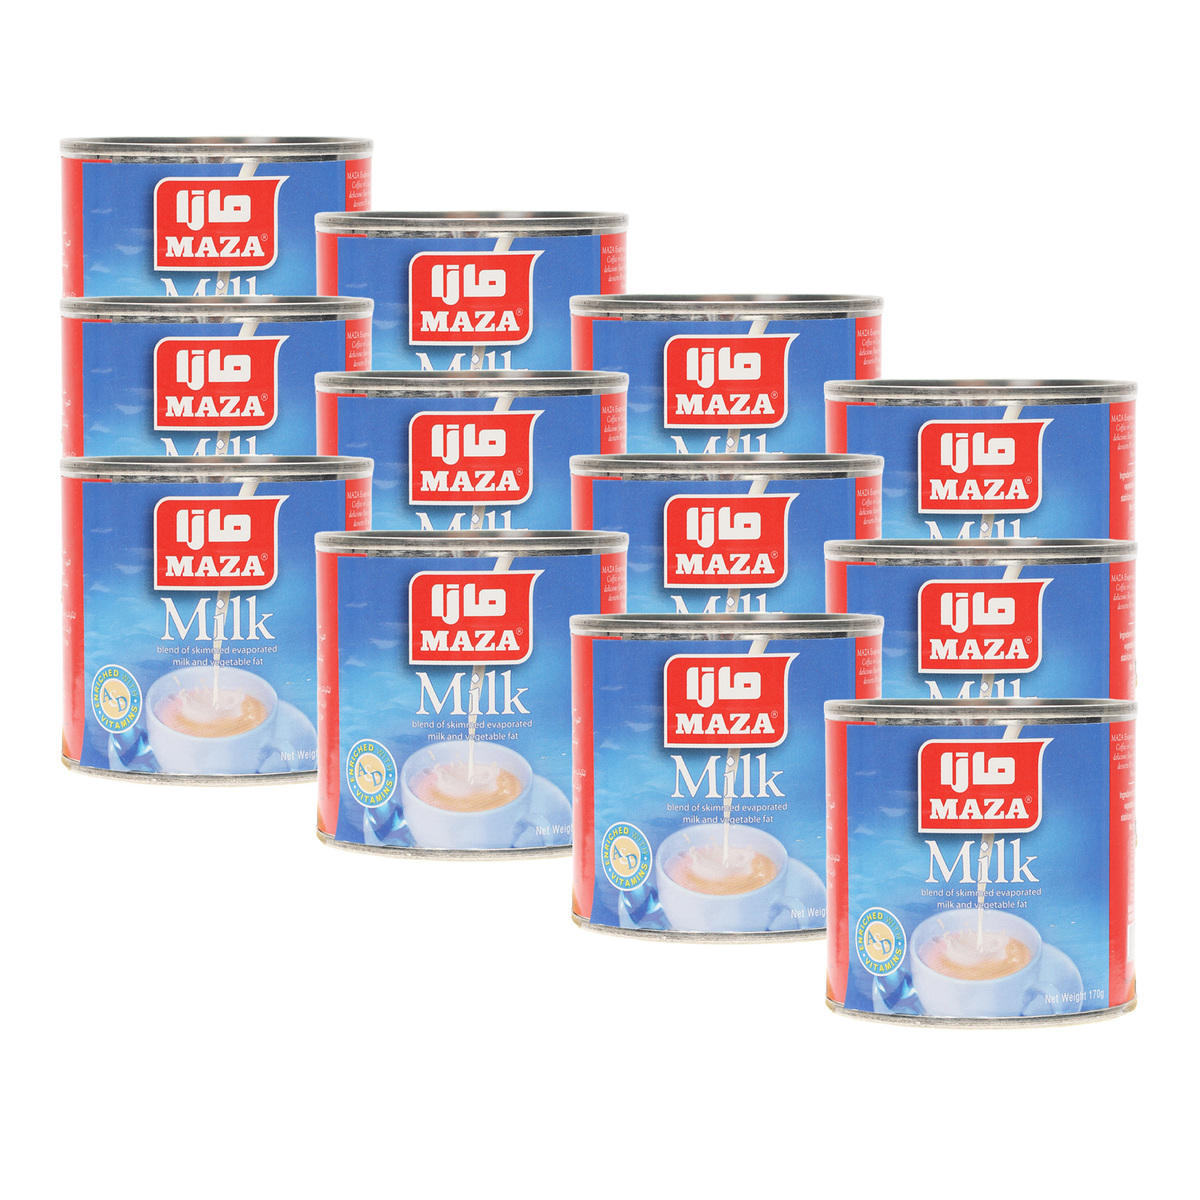 Maza Evaporated Milk Value Pack 12 x 170 g